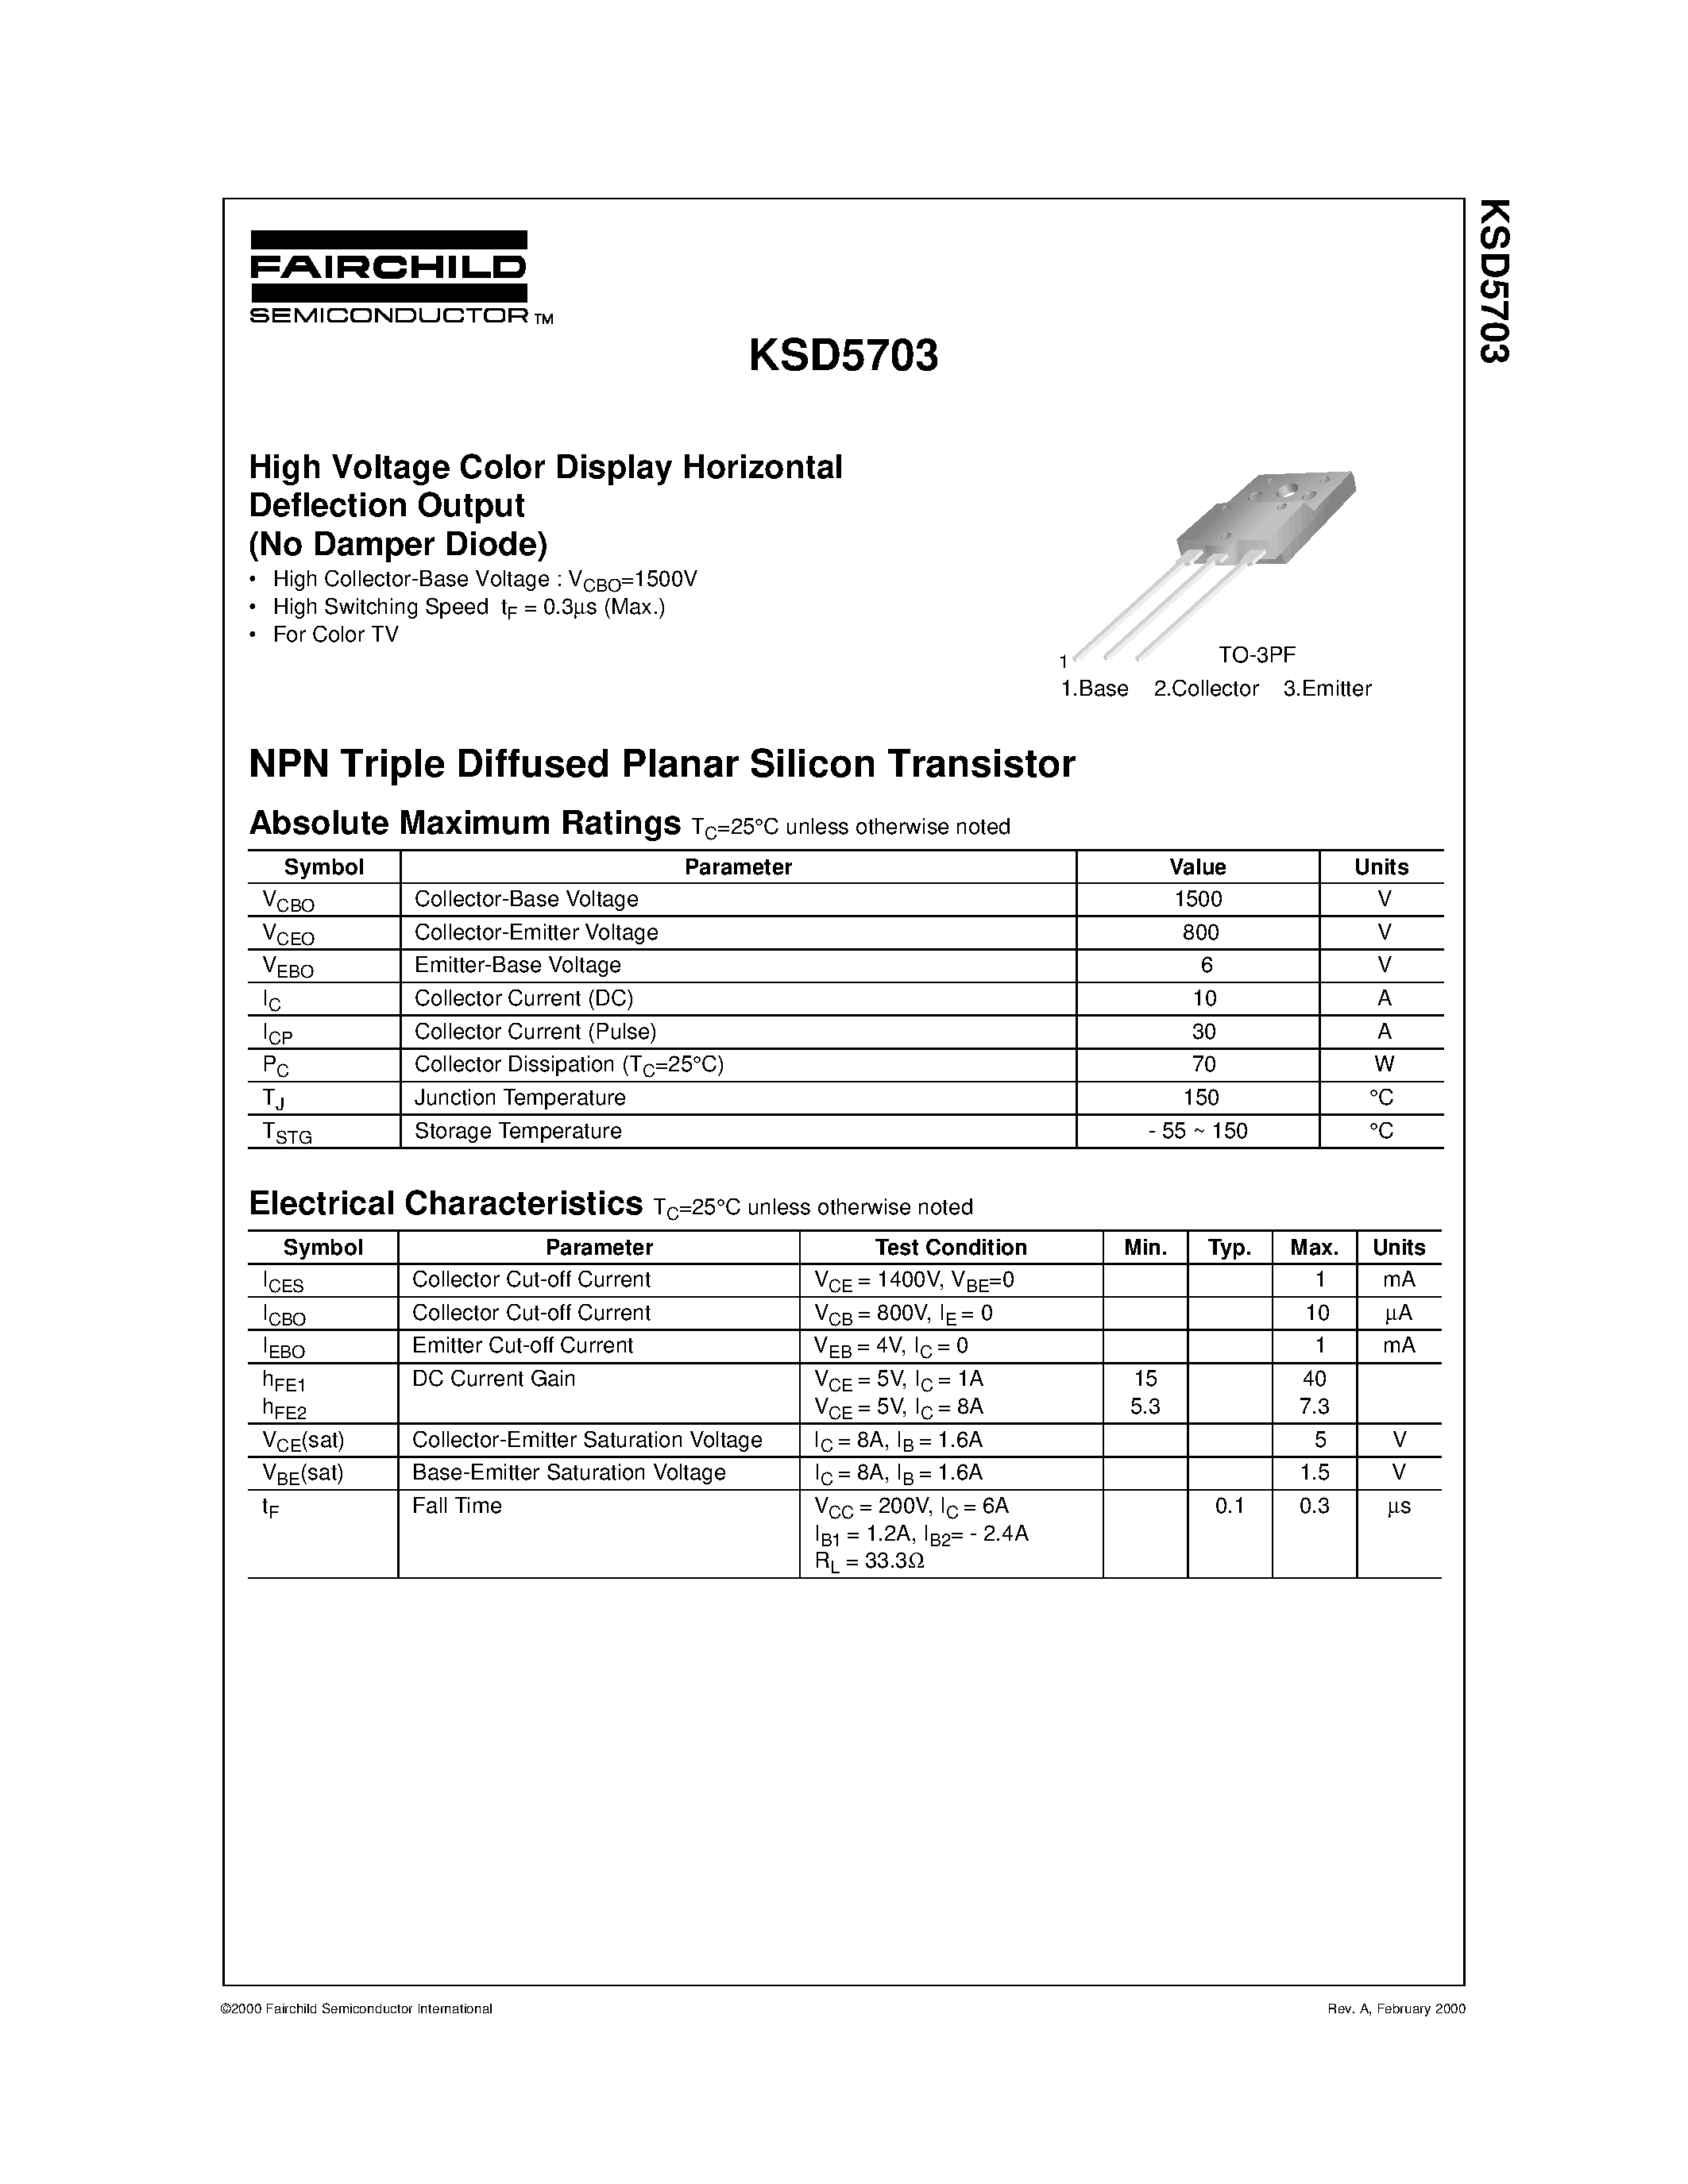 Даташит KSD5703 - High Voltage Color Display Horizontal Deflection Output (No Damper Diode) страница 1